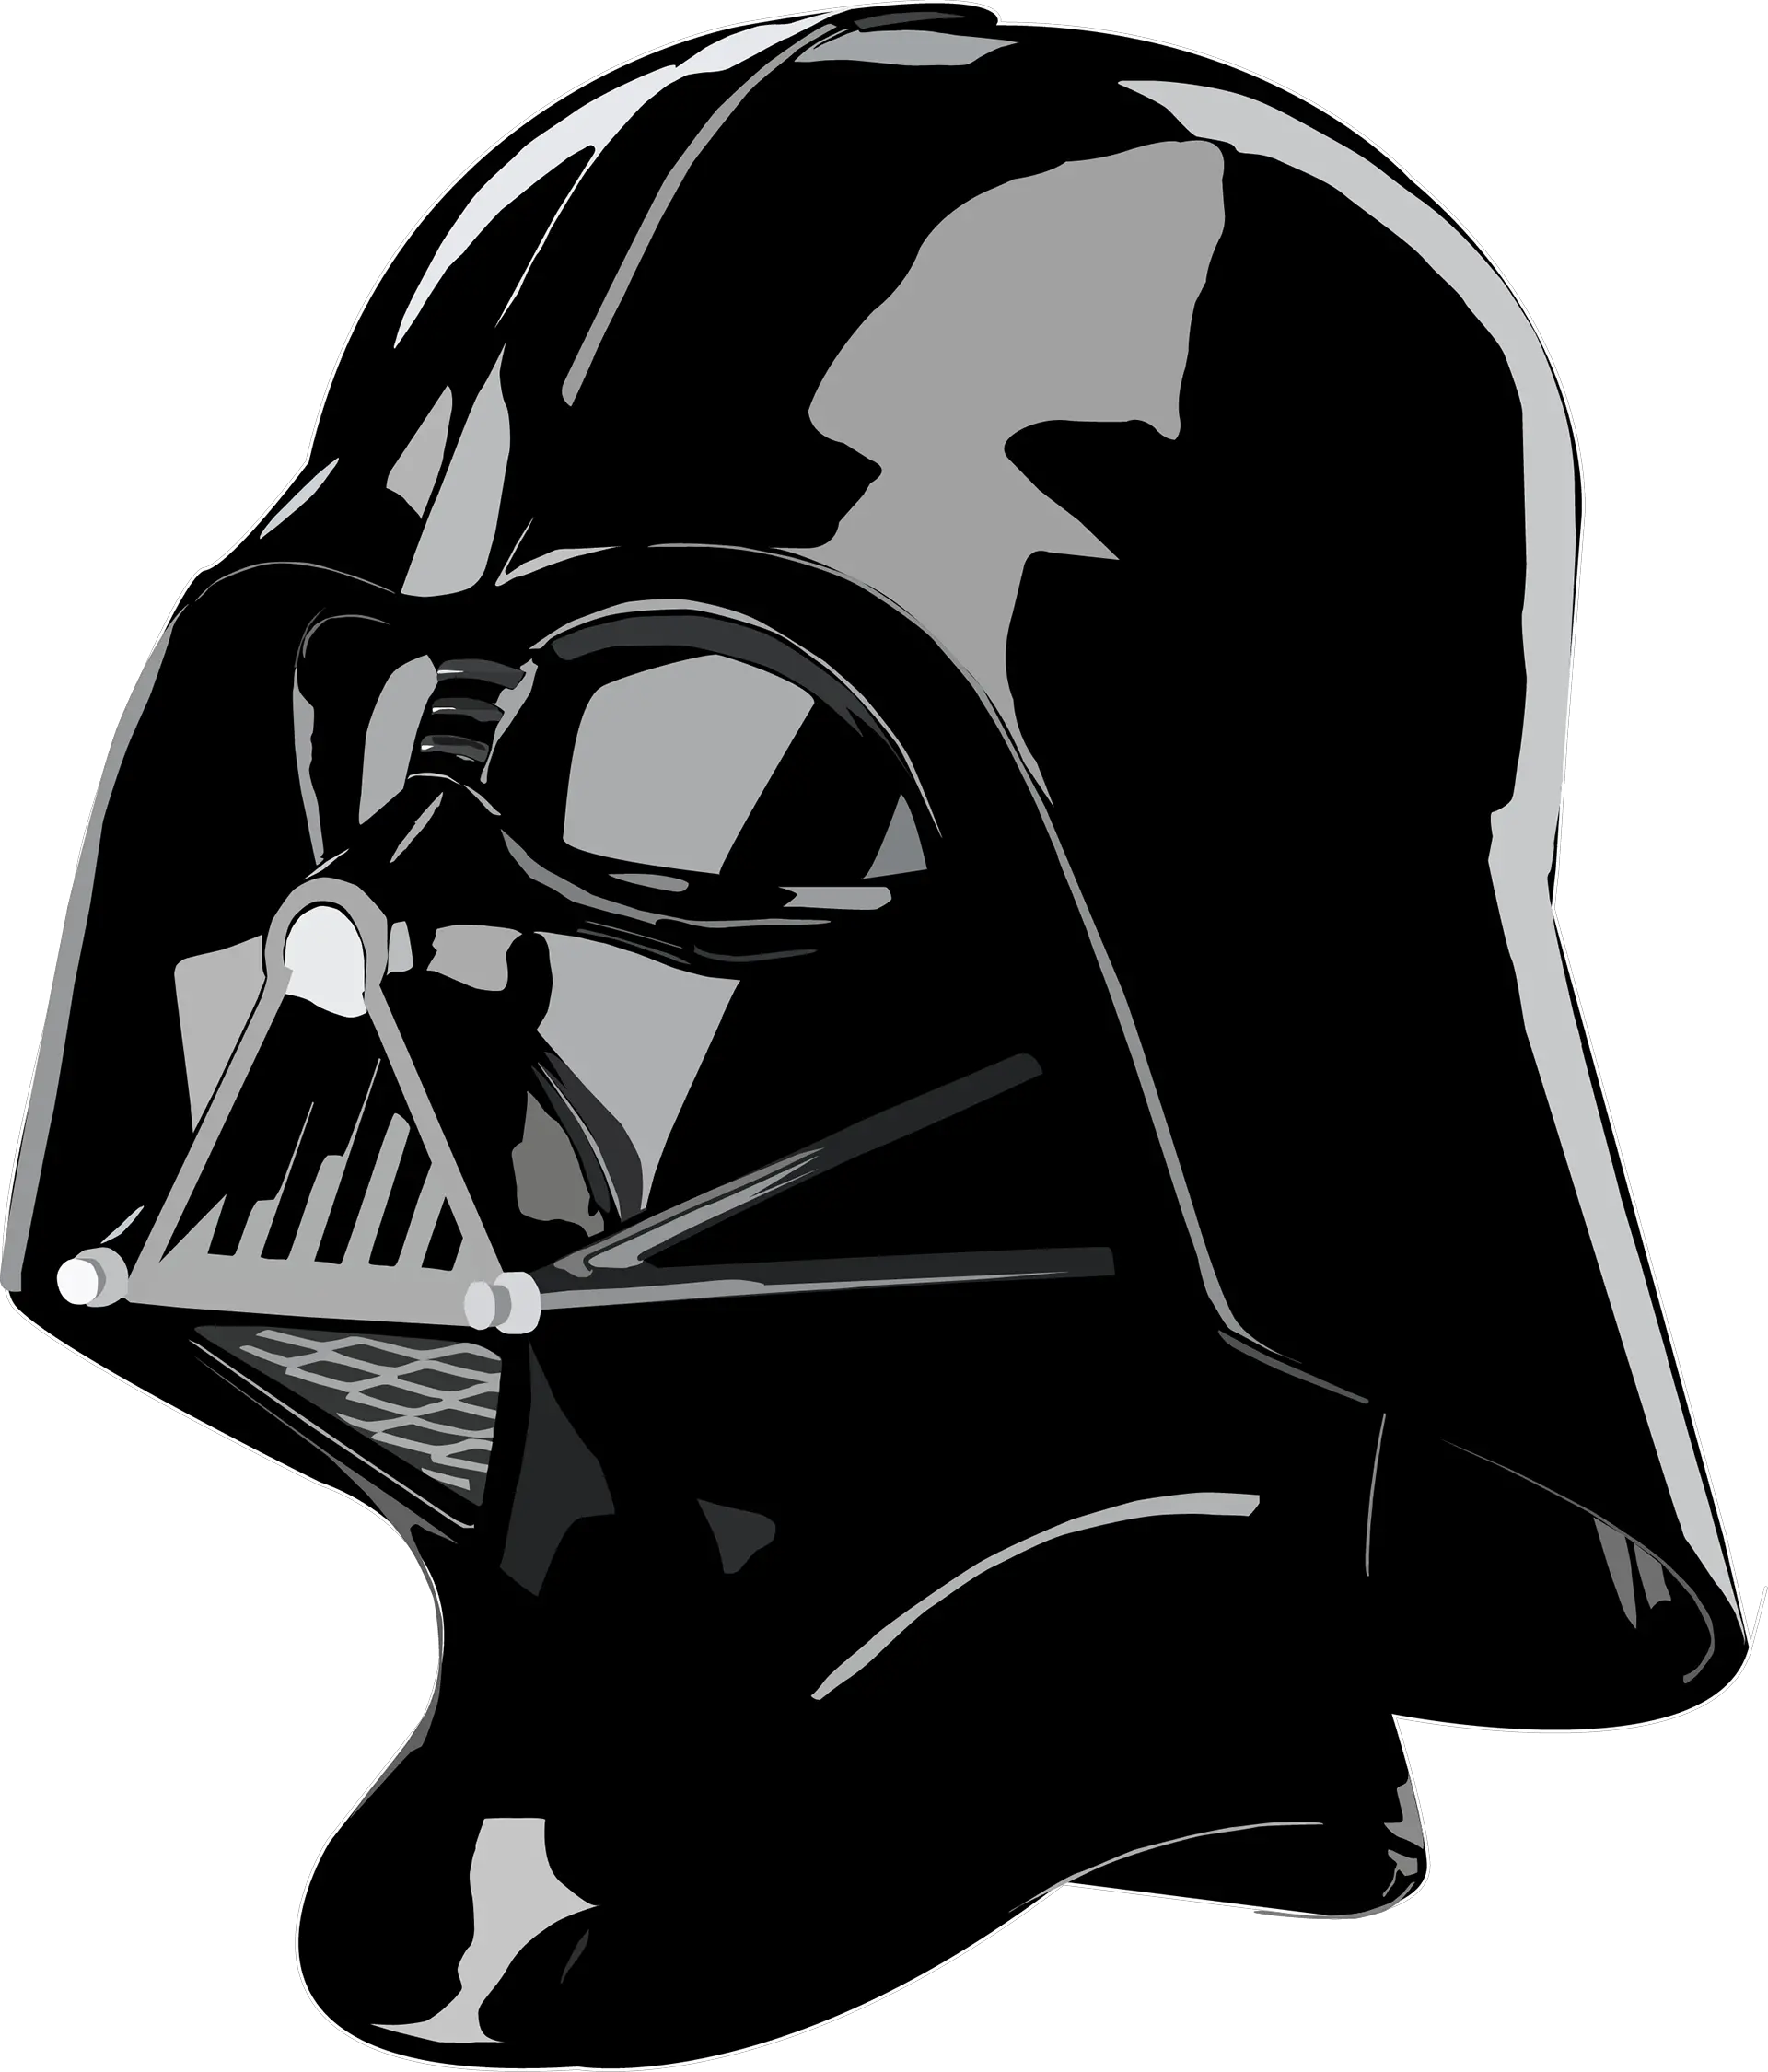 Mascara Darth Vader Png Image Darth Vader Helmet Transparent Background Vader Png